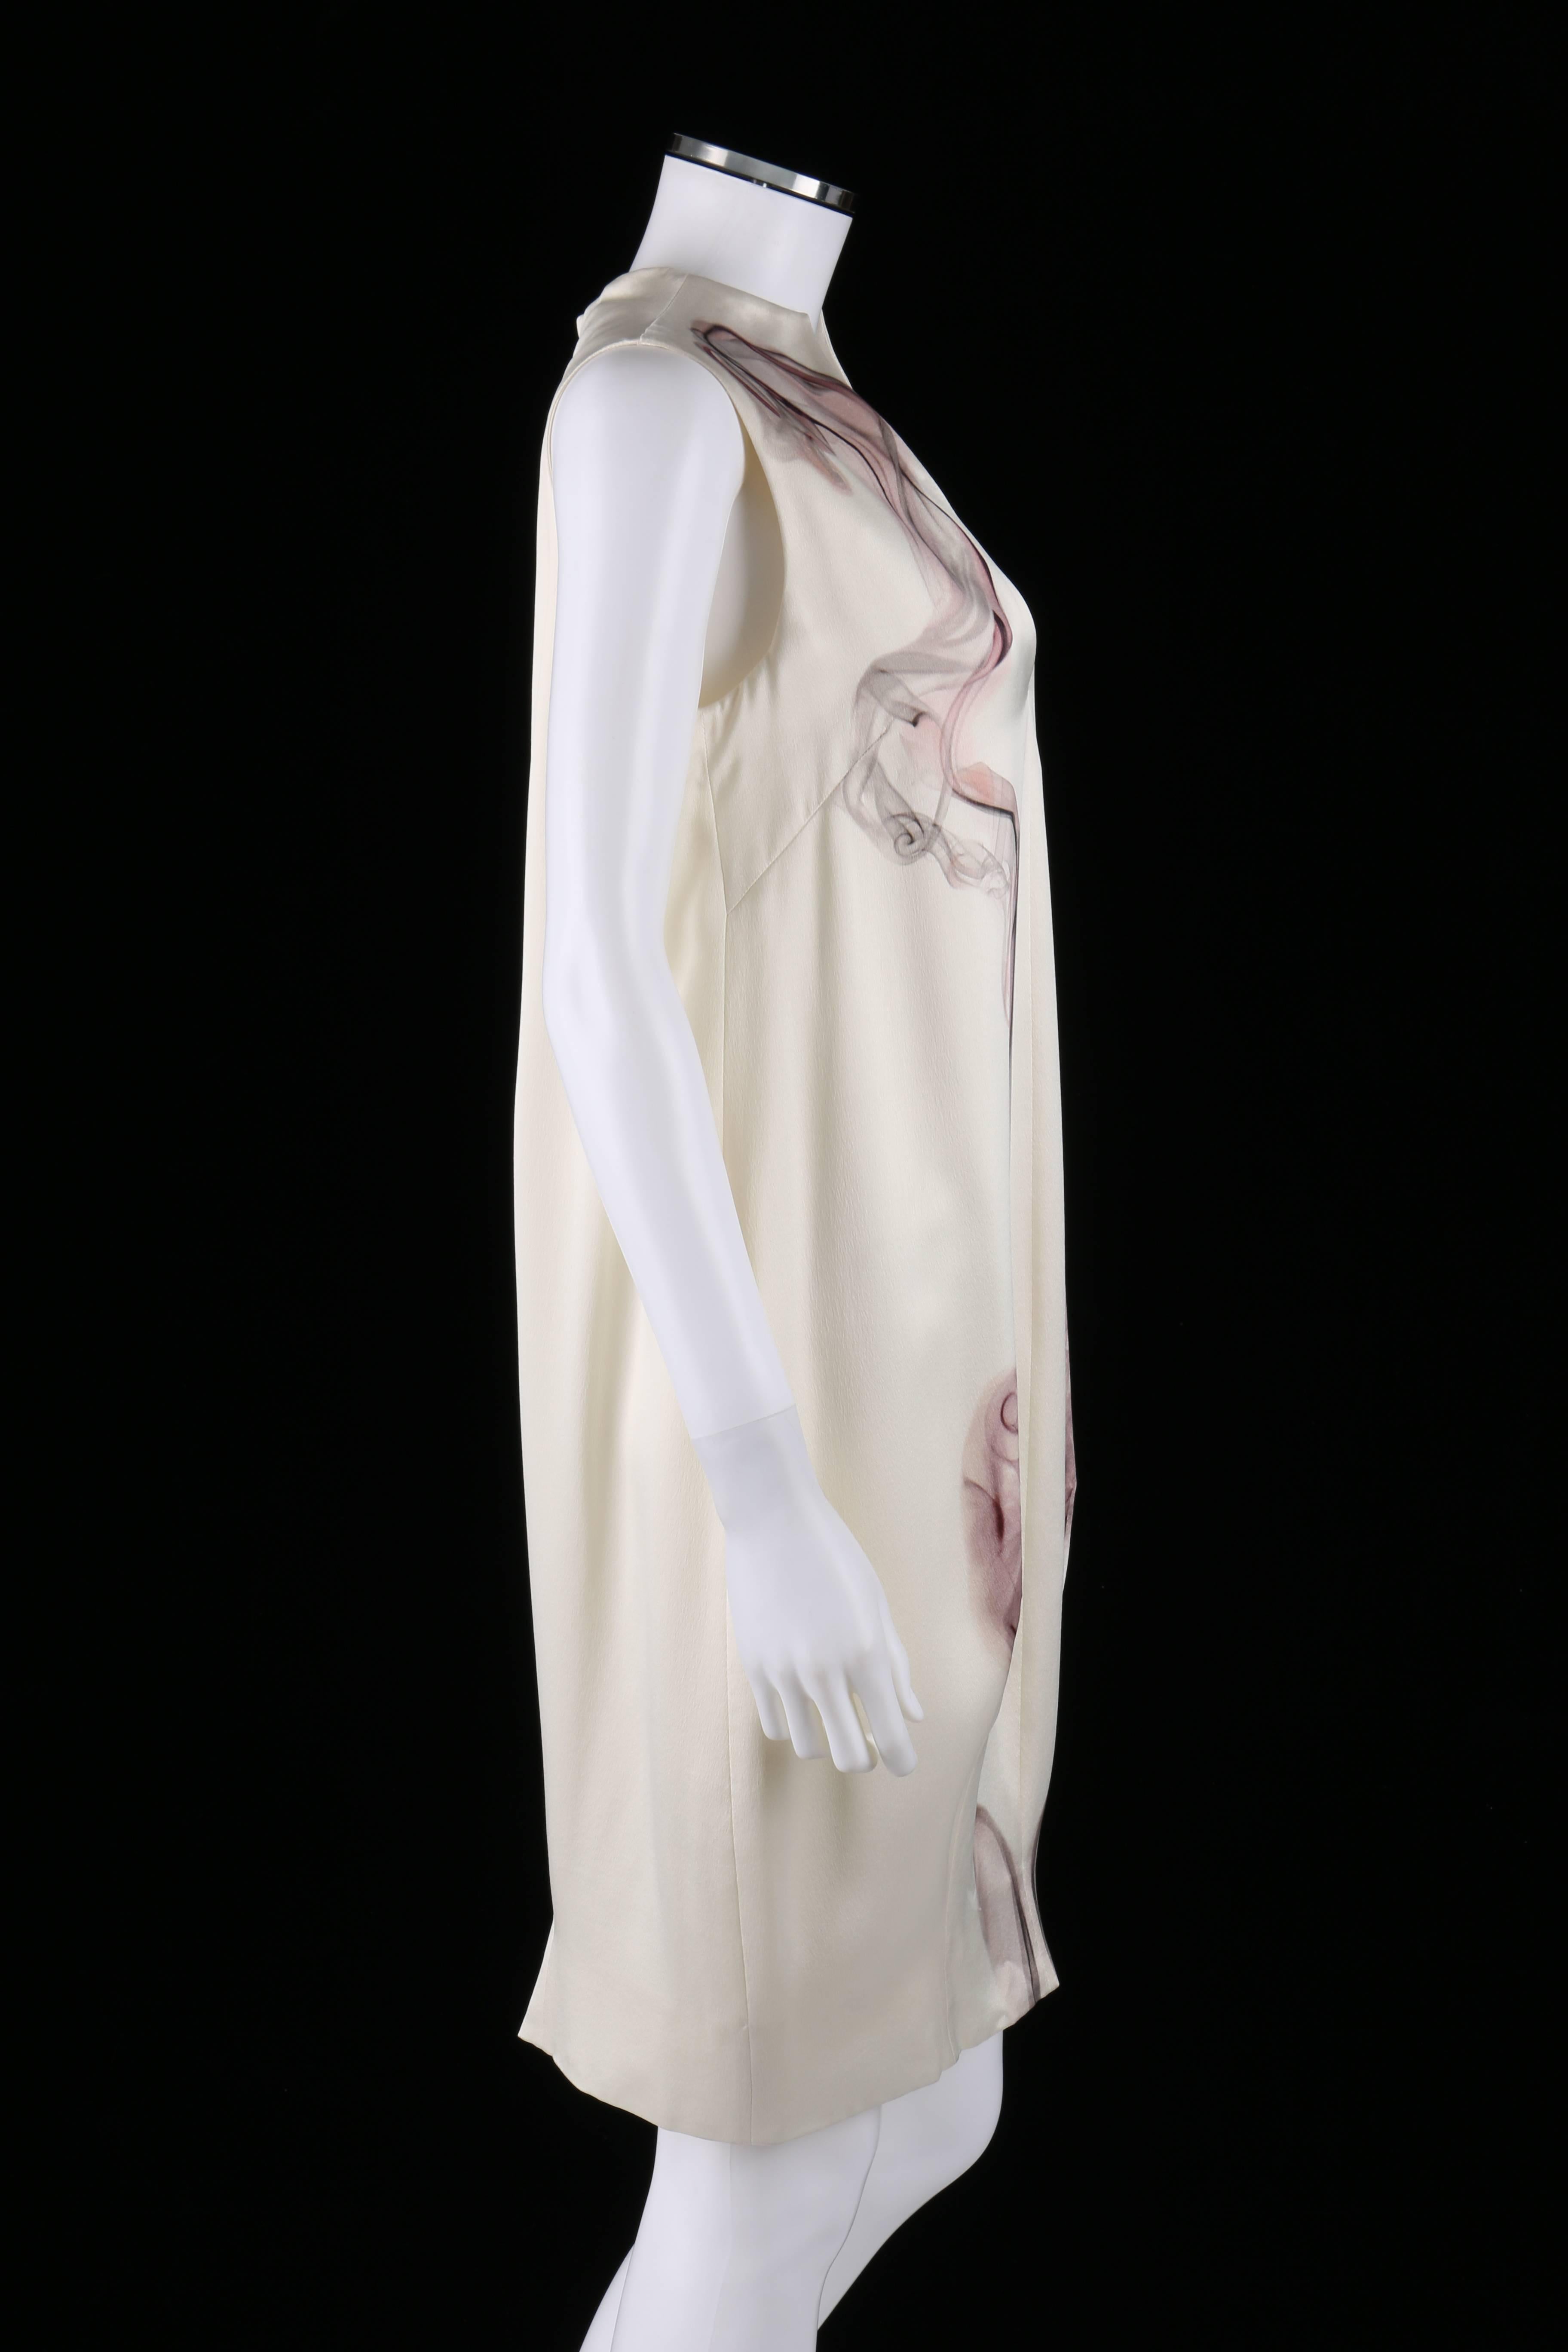 Gris ALEXANDER McQUEEN NOUVEAU Robe droite blanche 100 % motif fumée S/S 2009 Taille 44 en vente